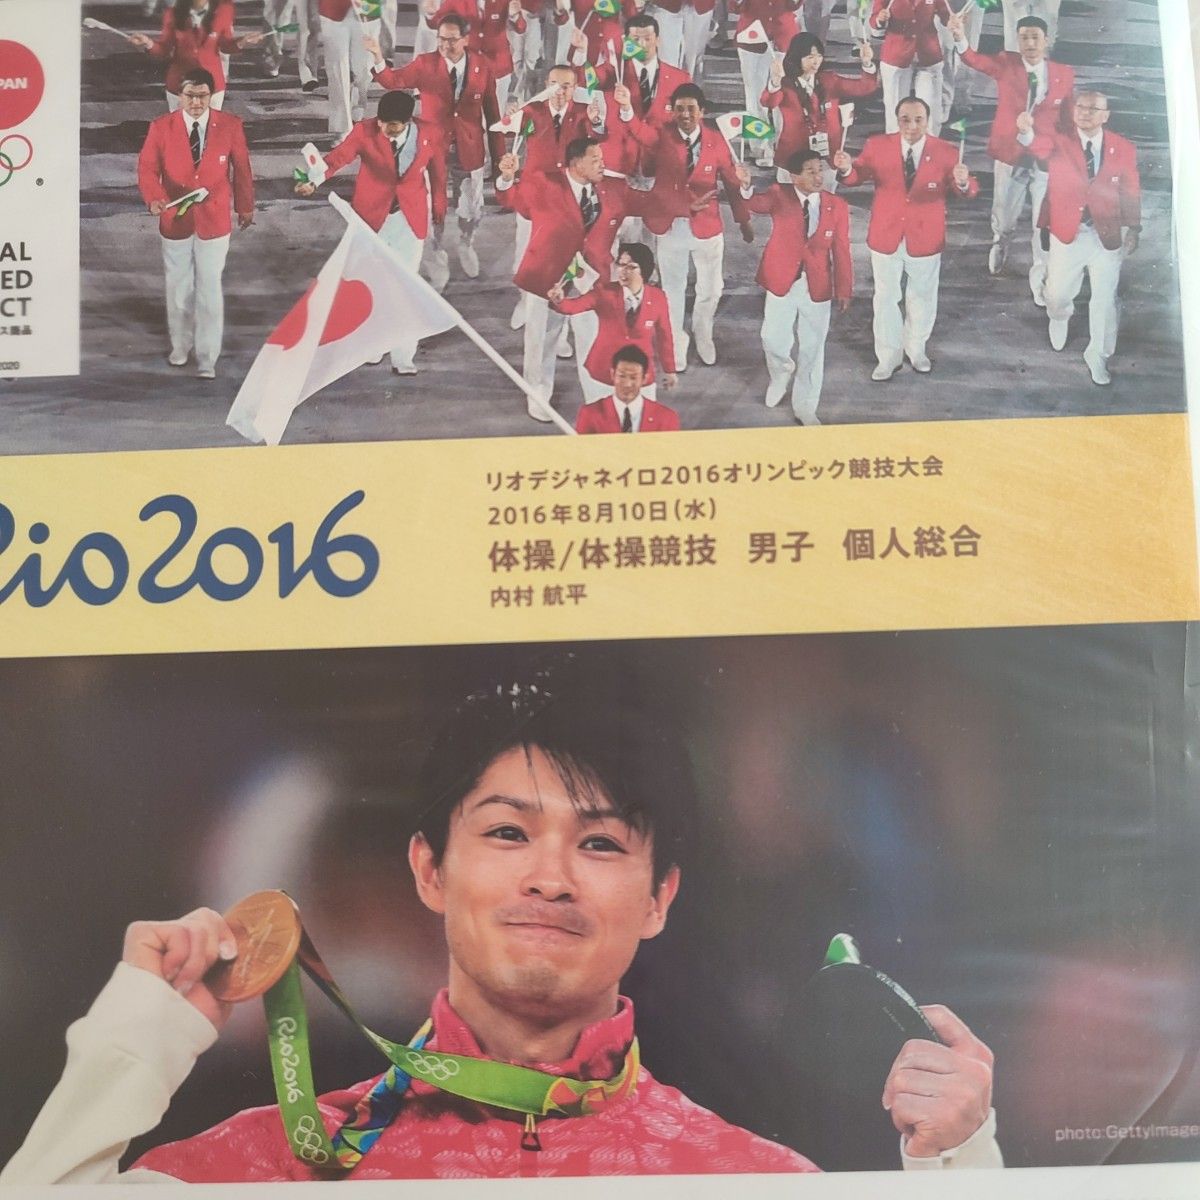 2016年 体操 金メダル 内村航平 選手 記念品